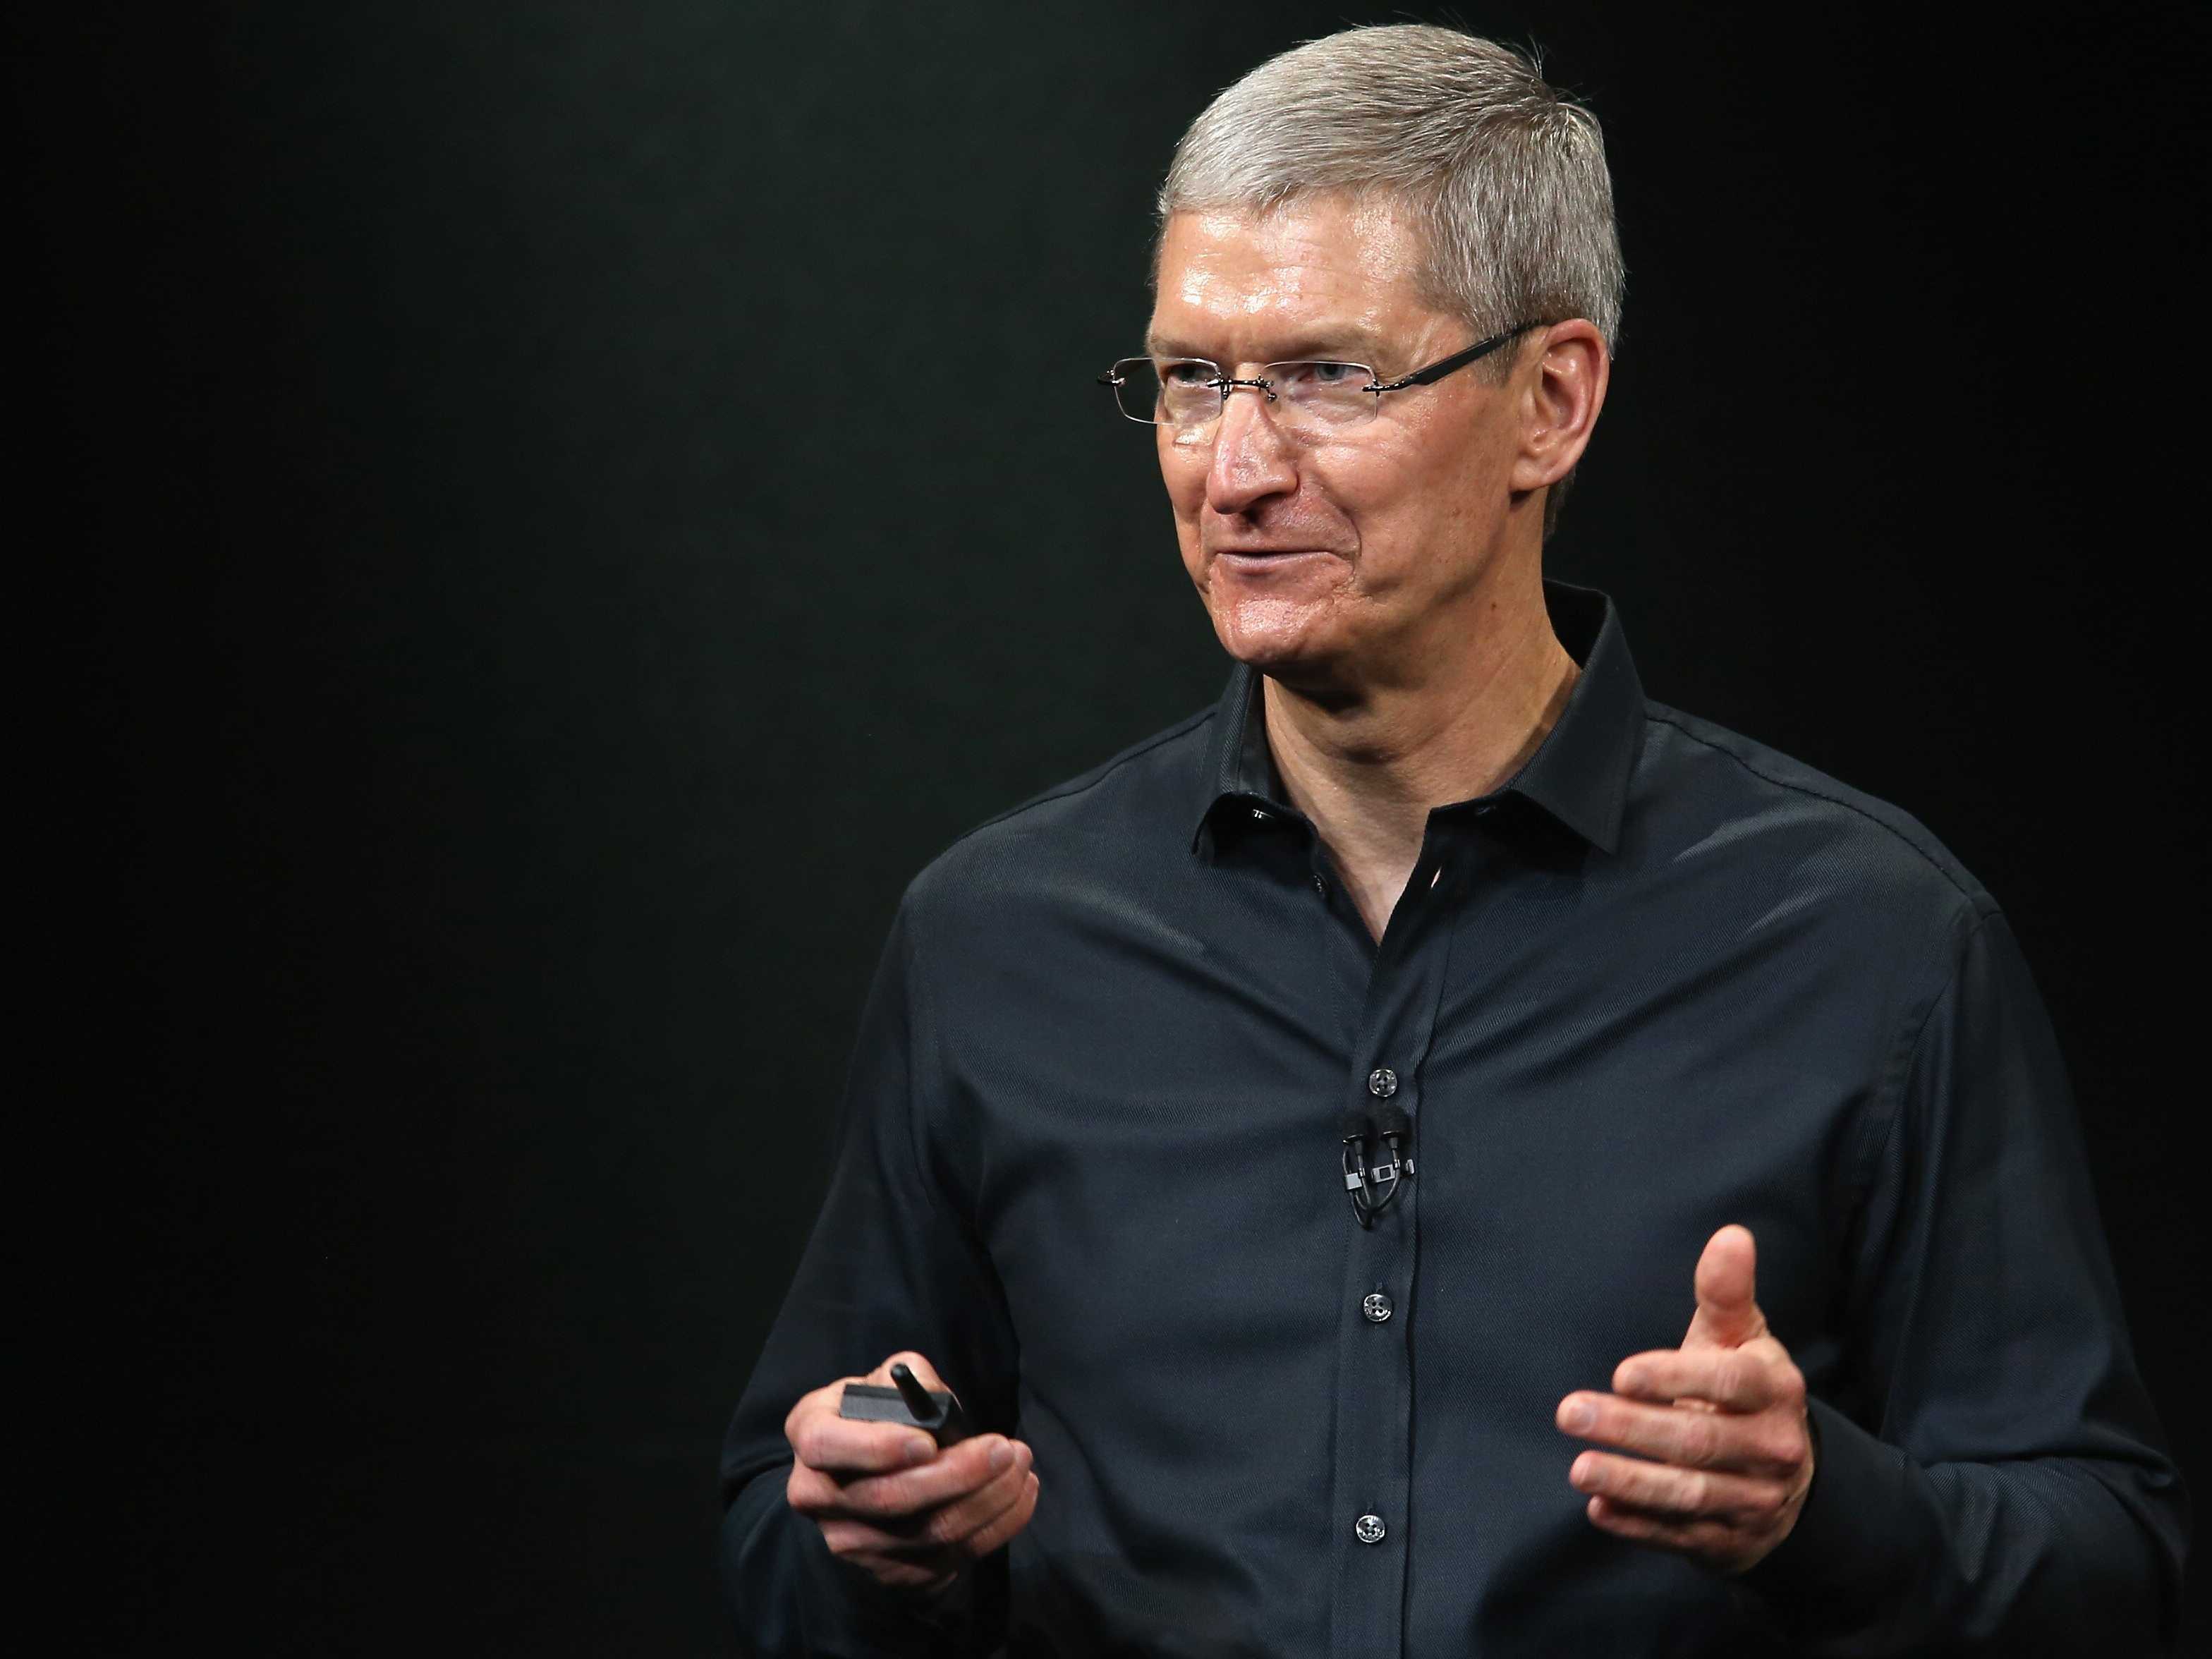 Tim Cook Apple non produrrà iPhone economico, delusi tanti fan